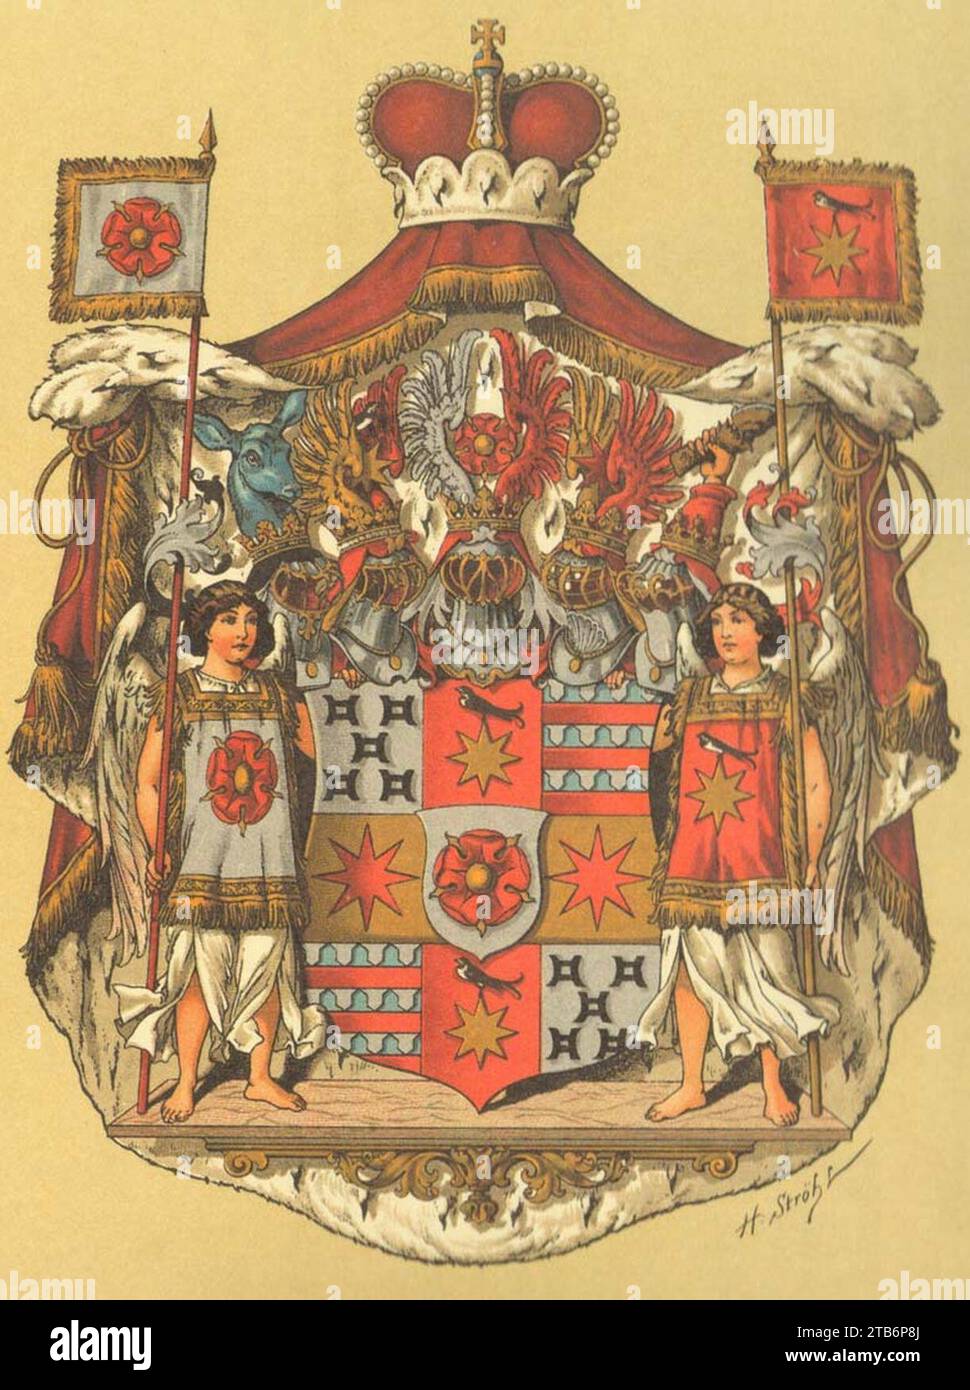 Wappen Deutsches Reich - Fürstentum Lippe. Stock Photo